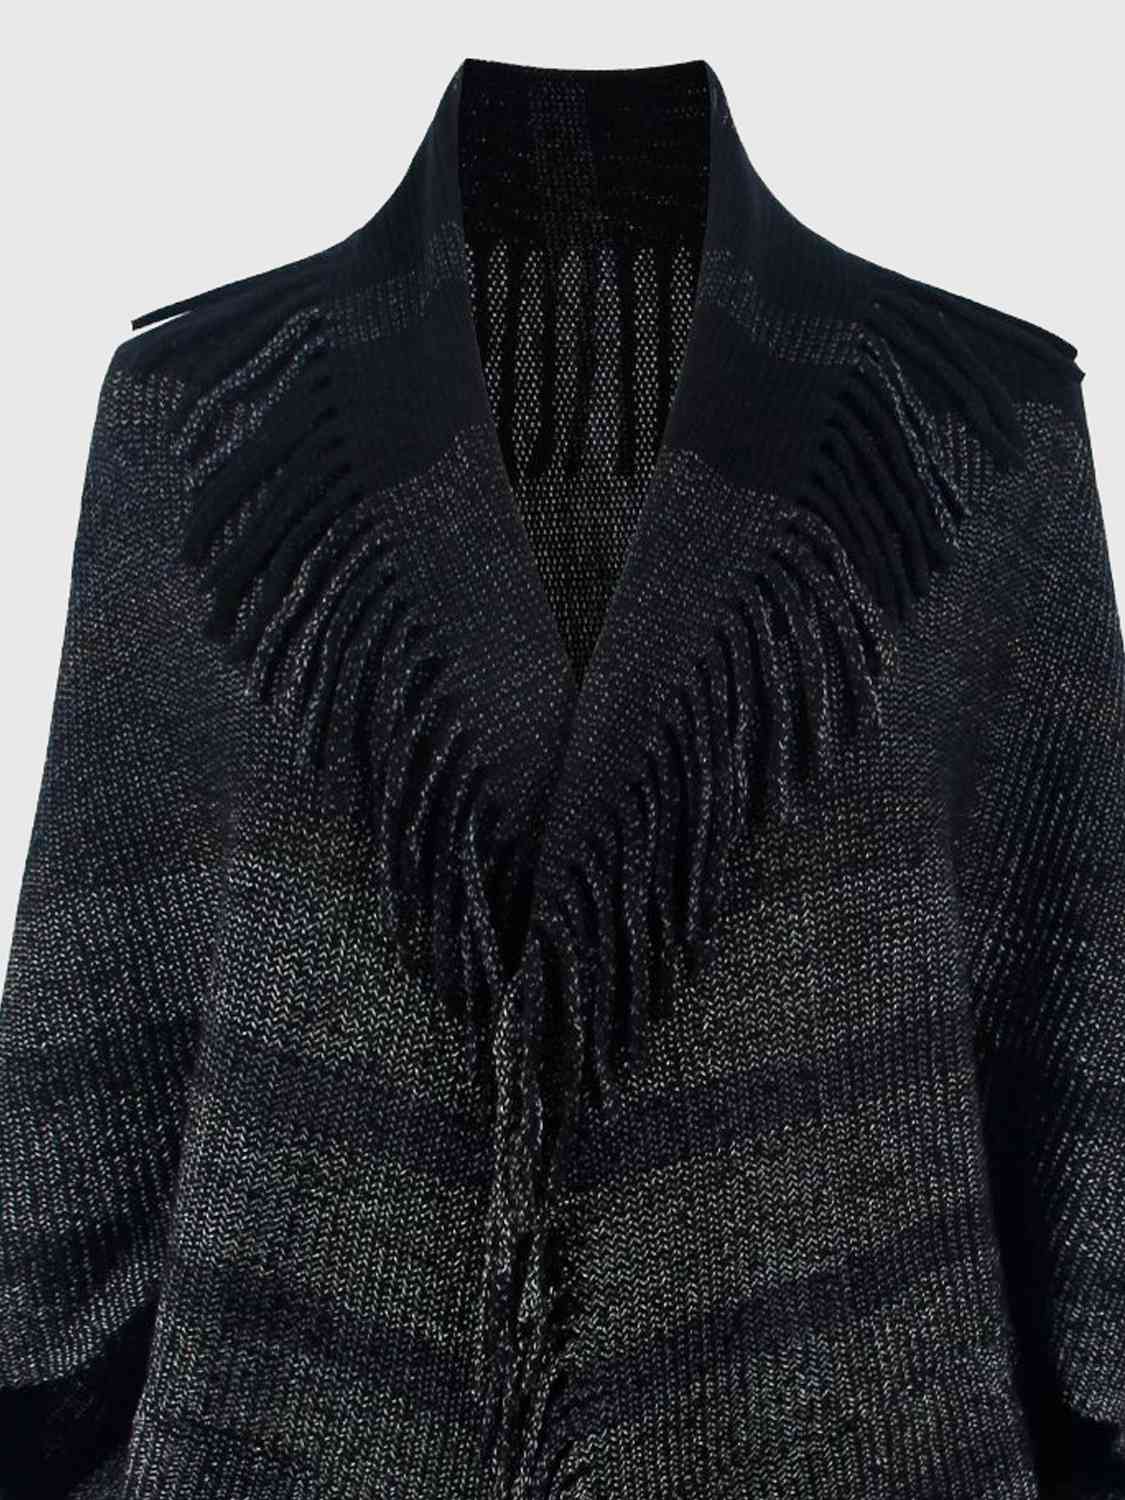 TEEK - Fringe Detail Open Front Sweater SWEATER TEEK Trend   